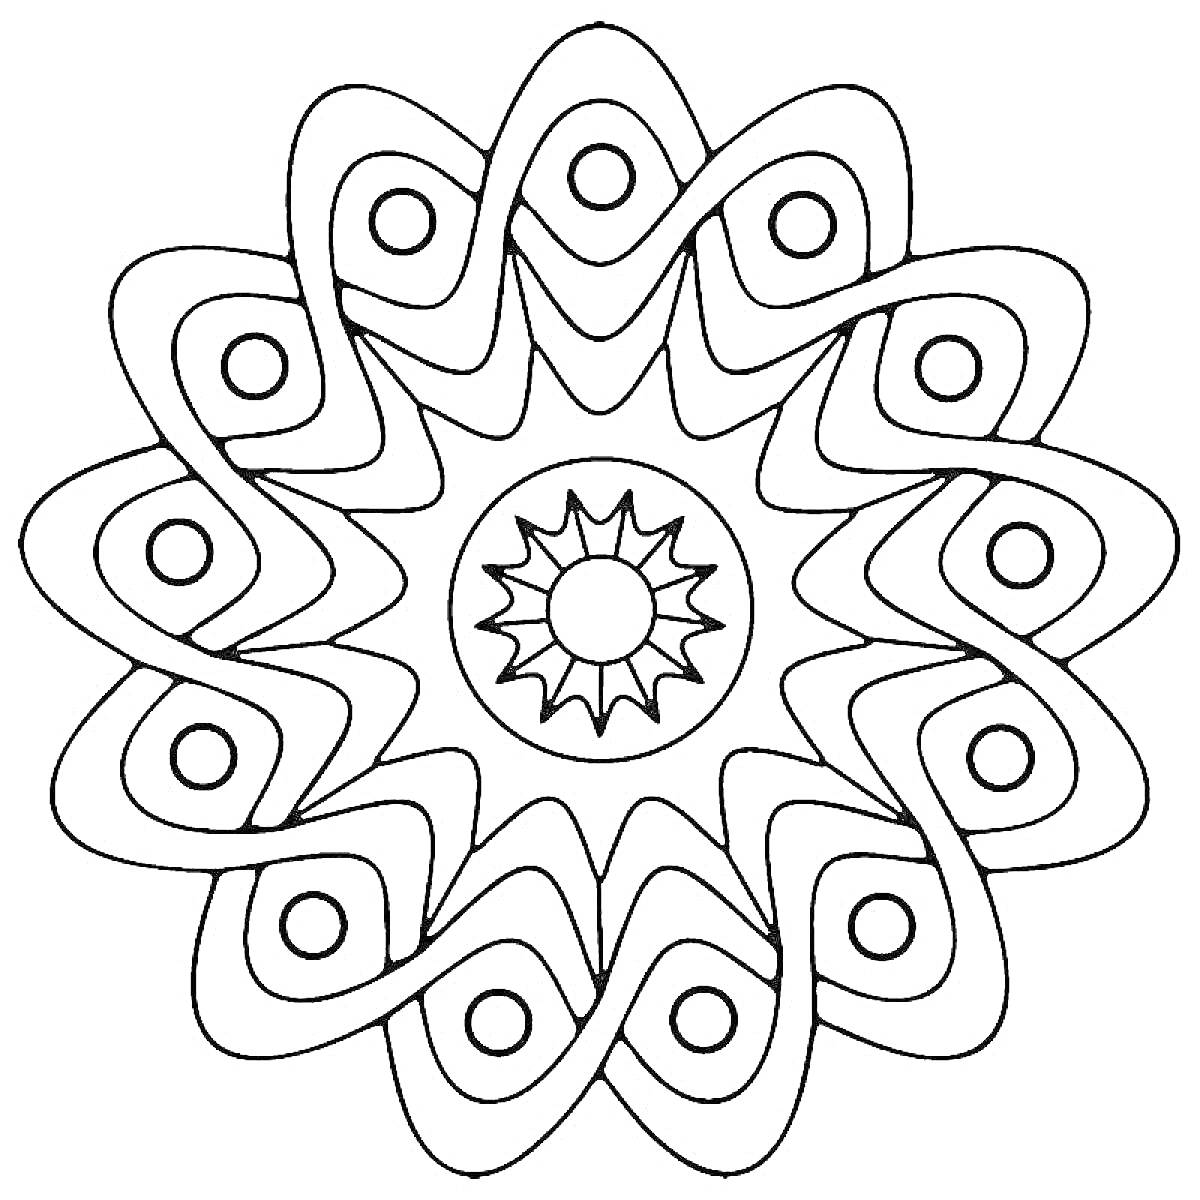 Раскраска круглый орнамент с волнообразными линиями и кругами внутри